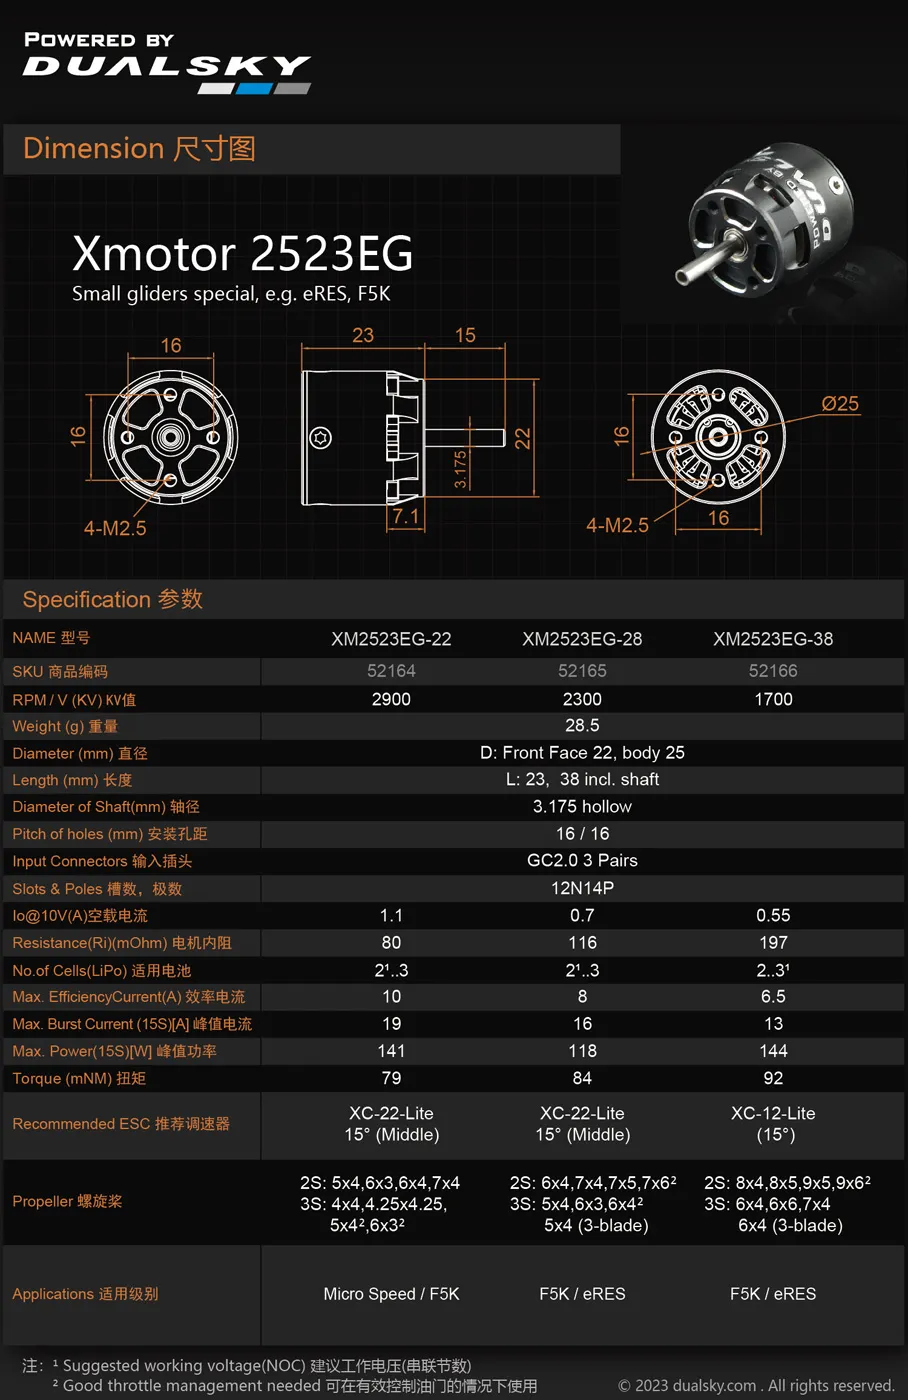 デュアルスカイ XM2523EG-28 (2300KV) ハウジング付き新型アウトランナー・インランナー グライダー用モーター 52165